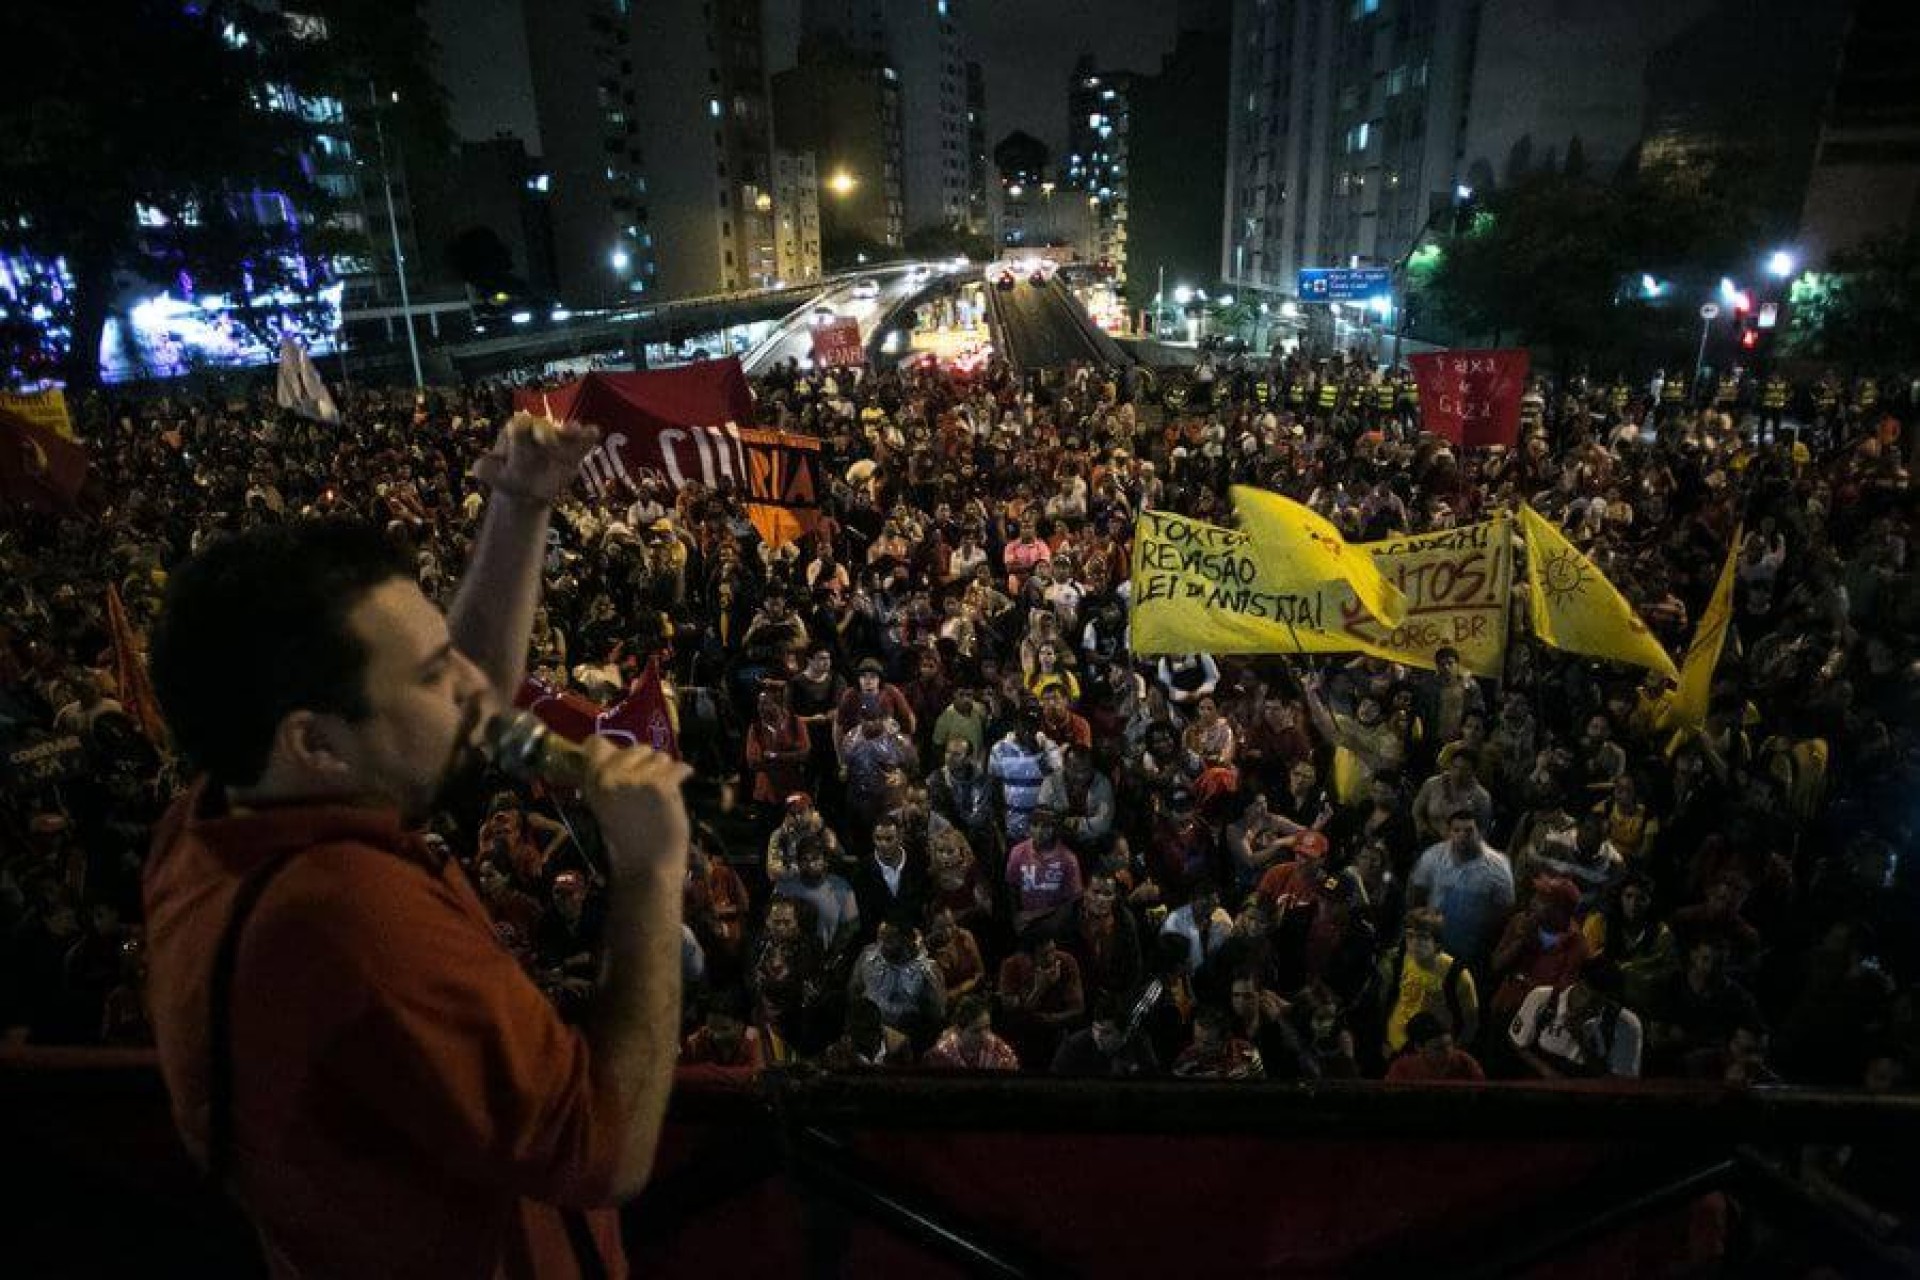 [Nota do Fortalecer o PSOL em apoio ao companheiro Guilherme Boulos:]